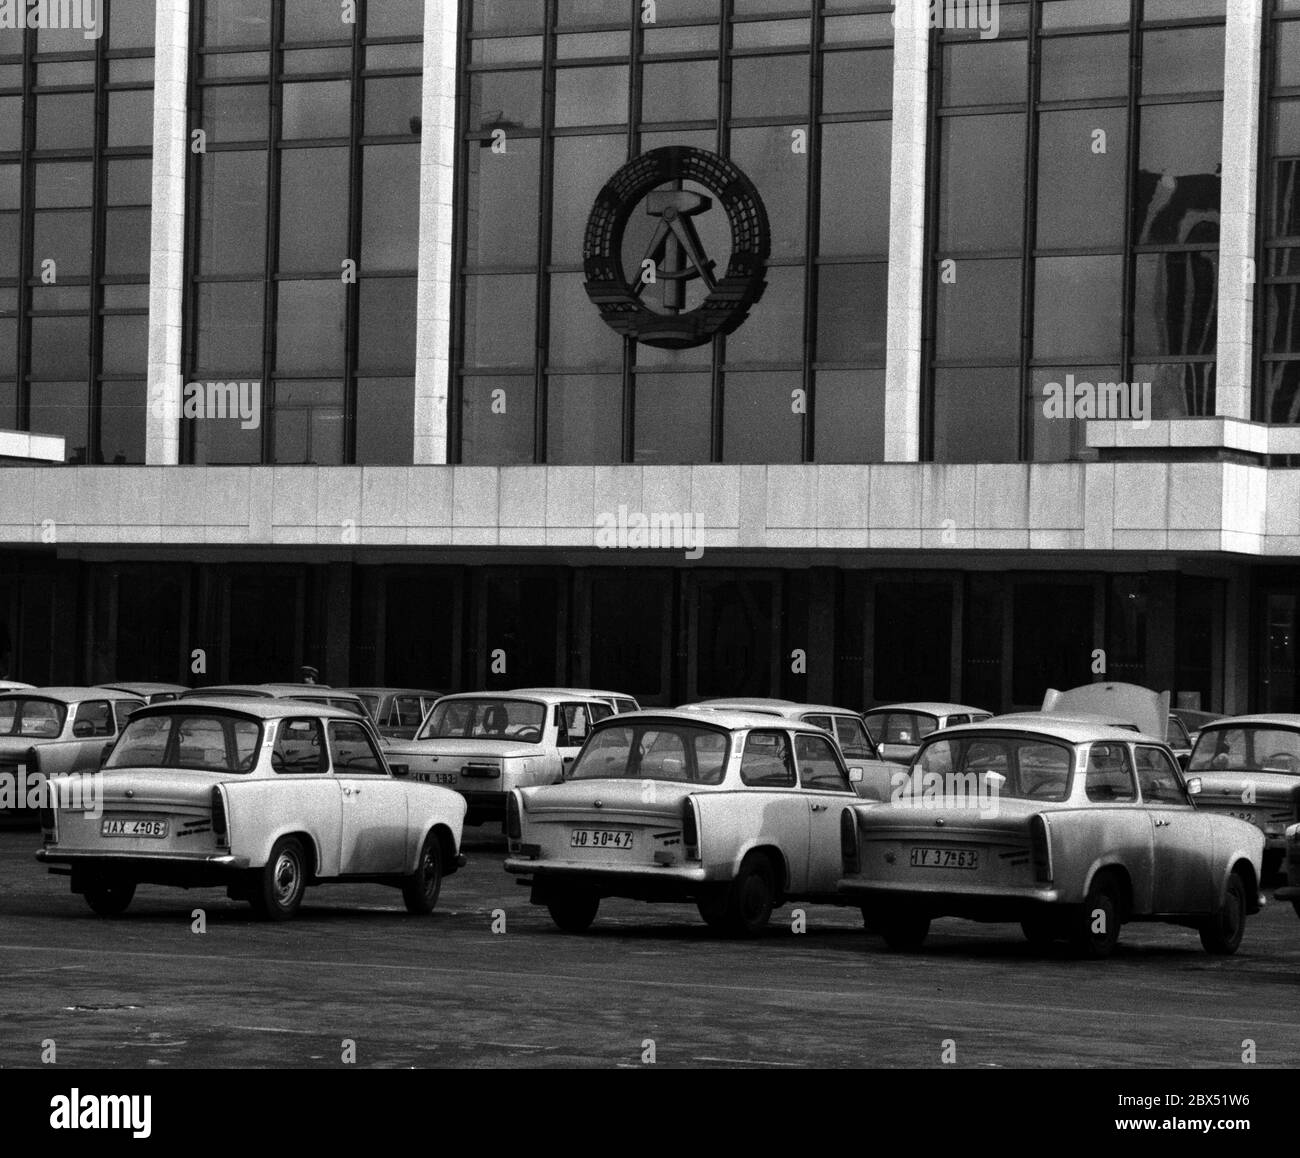 Berliner Bezirke / Ende der DDR / Emblem / 20.2.1985 Ost-Berlin: Palast der Republik. Es gab auch die Volkskammer. Das DDR-Emblem hängt noch immer dort. Der davor abgehngte Parkplatz zeigt den Wohlstand der DDR. Es gab hauptsächlich nur 2 Typen von Autos: Trabant und Wartburg. Der Palast wurde nach der Vereinigung abgerissen. // DDR-Staat / Linden anstelle des 1950 abgerissenen Stadtpalastes wurde ab 1973 das Schloss der Republik gebaut, 180 m lang, 32 m breit. Im Inneren waren verschiedene Einrichtungen. In der großen Halle, die 5000 Besucher hielt, fanden Veranstaltungen statt. Die Volkskammer der DDR Stockfoto